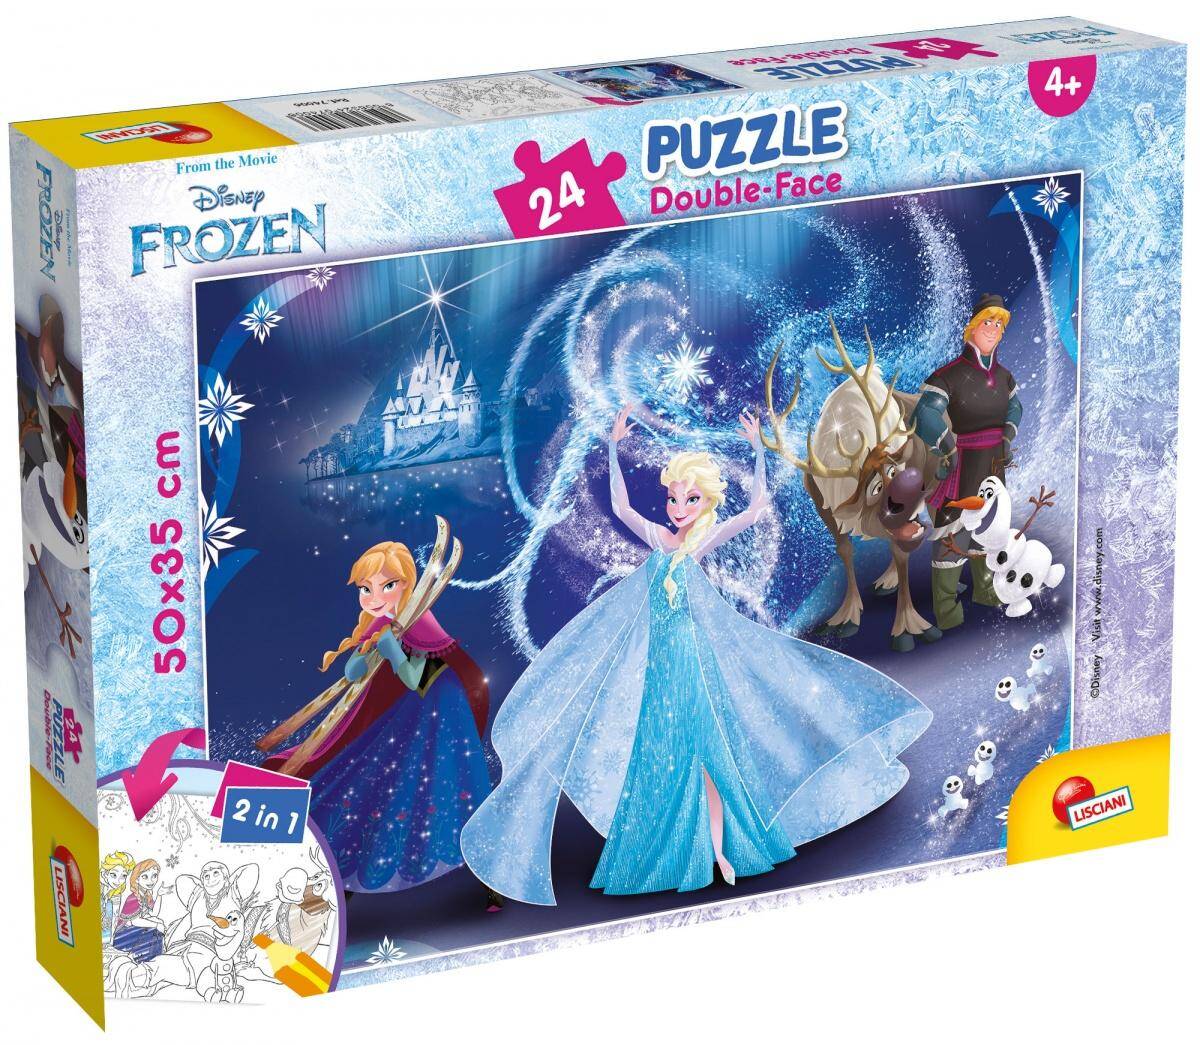 Puzzle 24 plus double-face Frozen 304-74006